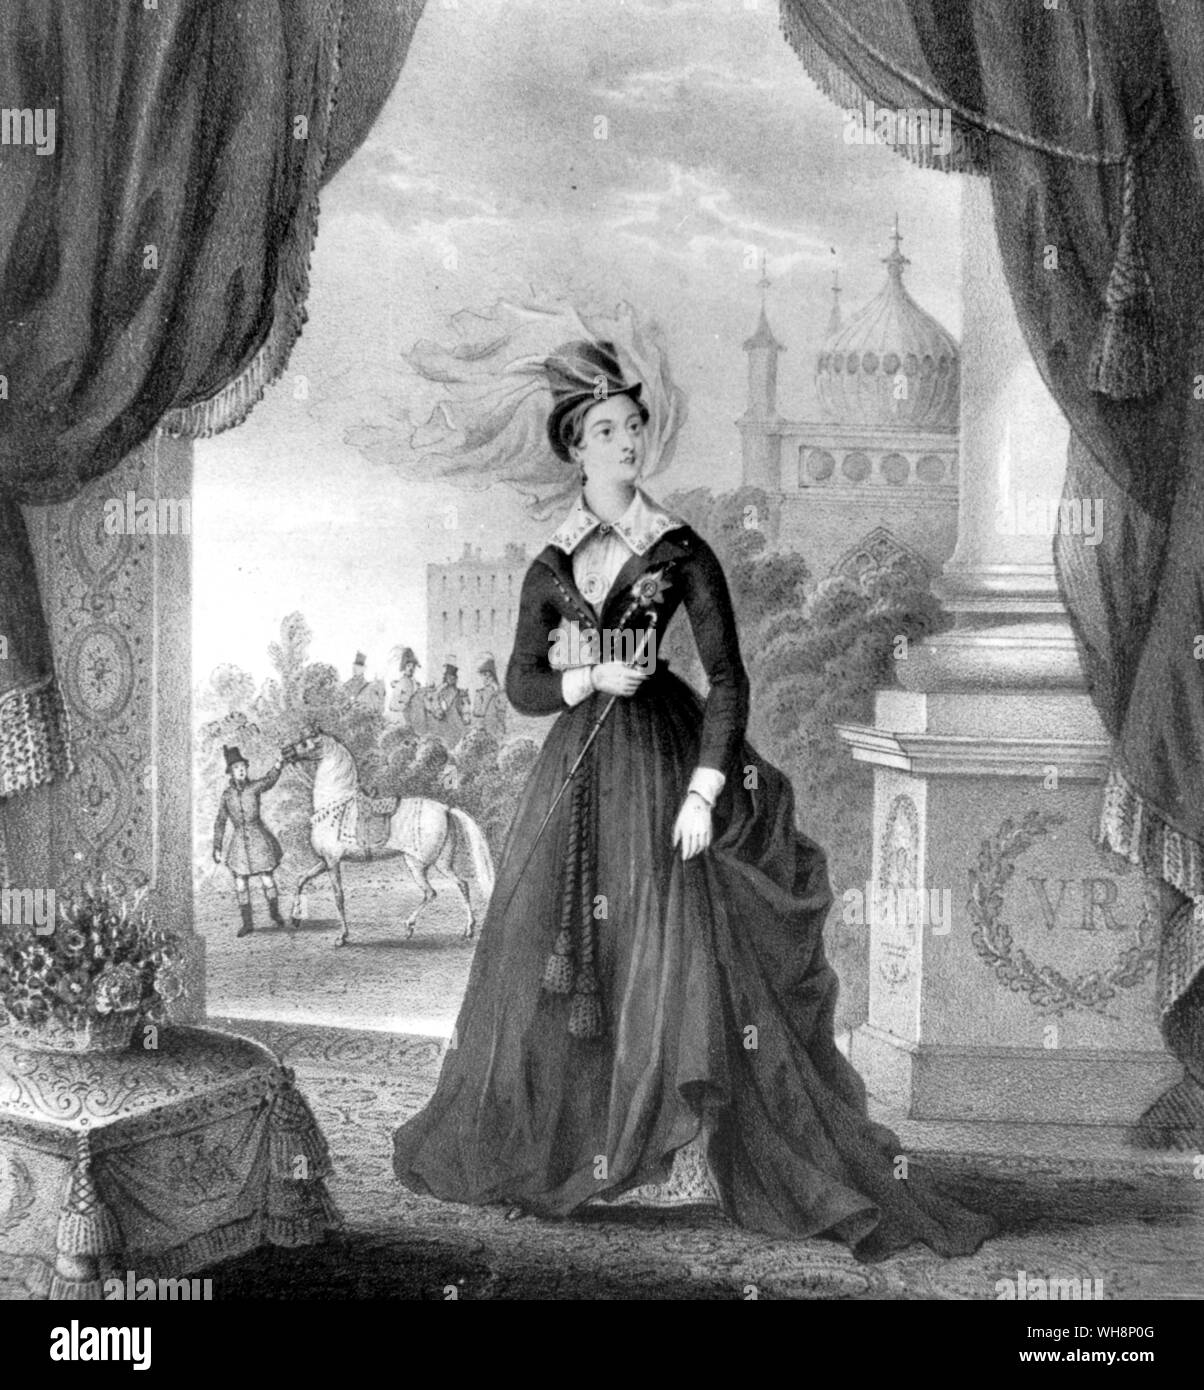 Au cours des premières années de son règne la Reine Victoria souvent séjourné à Brighton au Royal Pavilion construite par son oncle George IV quand il était Prince Regent ici elle est vue en 1838 au sujet d'aller à cheval sur son cheval arabe préférée dans le domaine du pavillon Banque D'Images